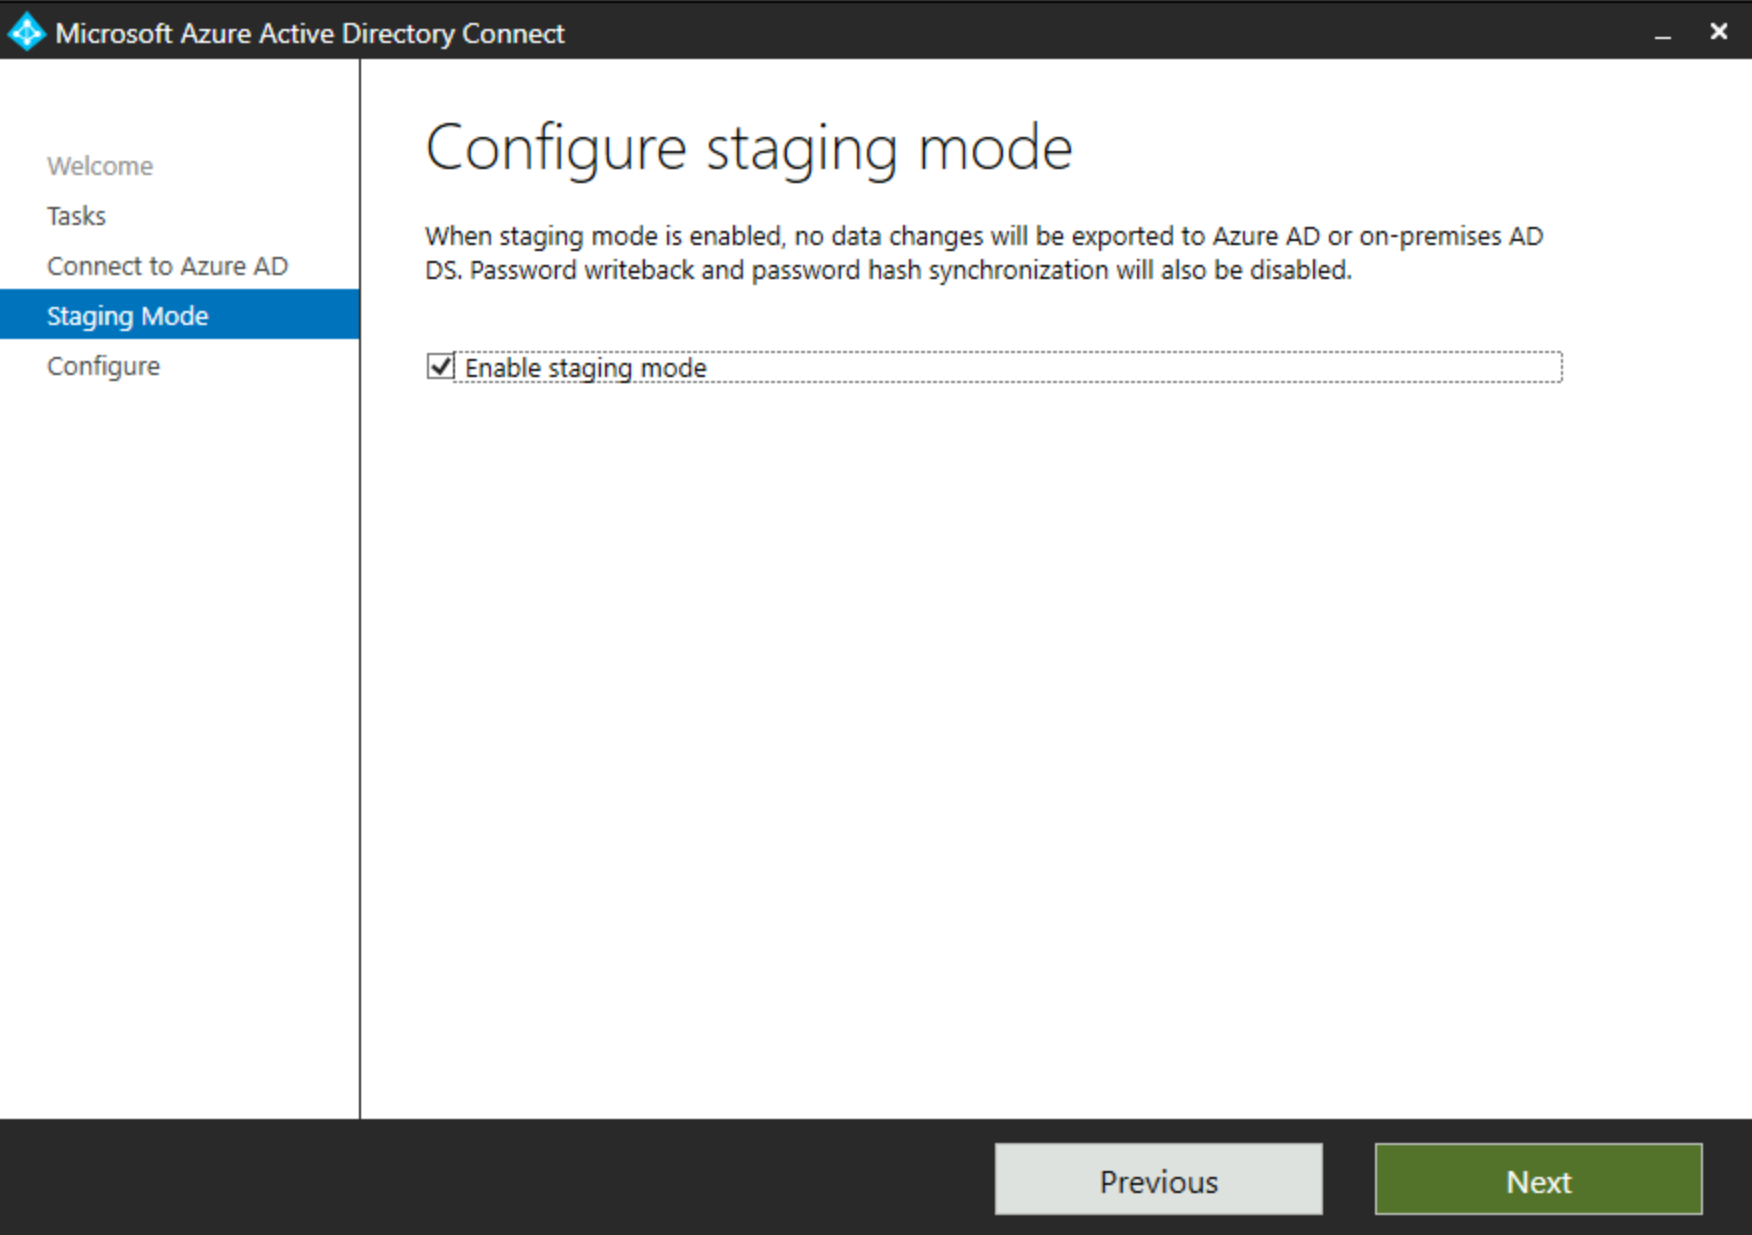 Etkin Microsoft Entra Bağlan iletişim kutusunda Hazırlama Modu yapılandırmasını gösteren ekran görüntüsü.